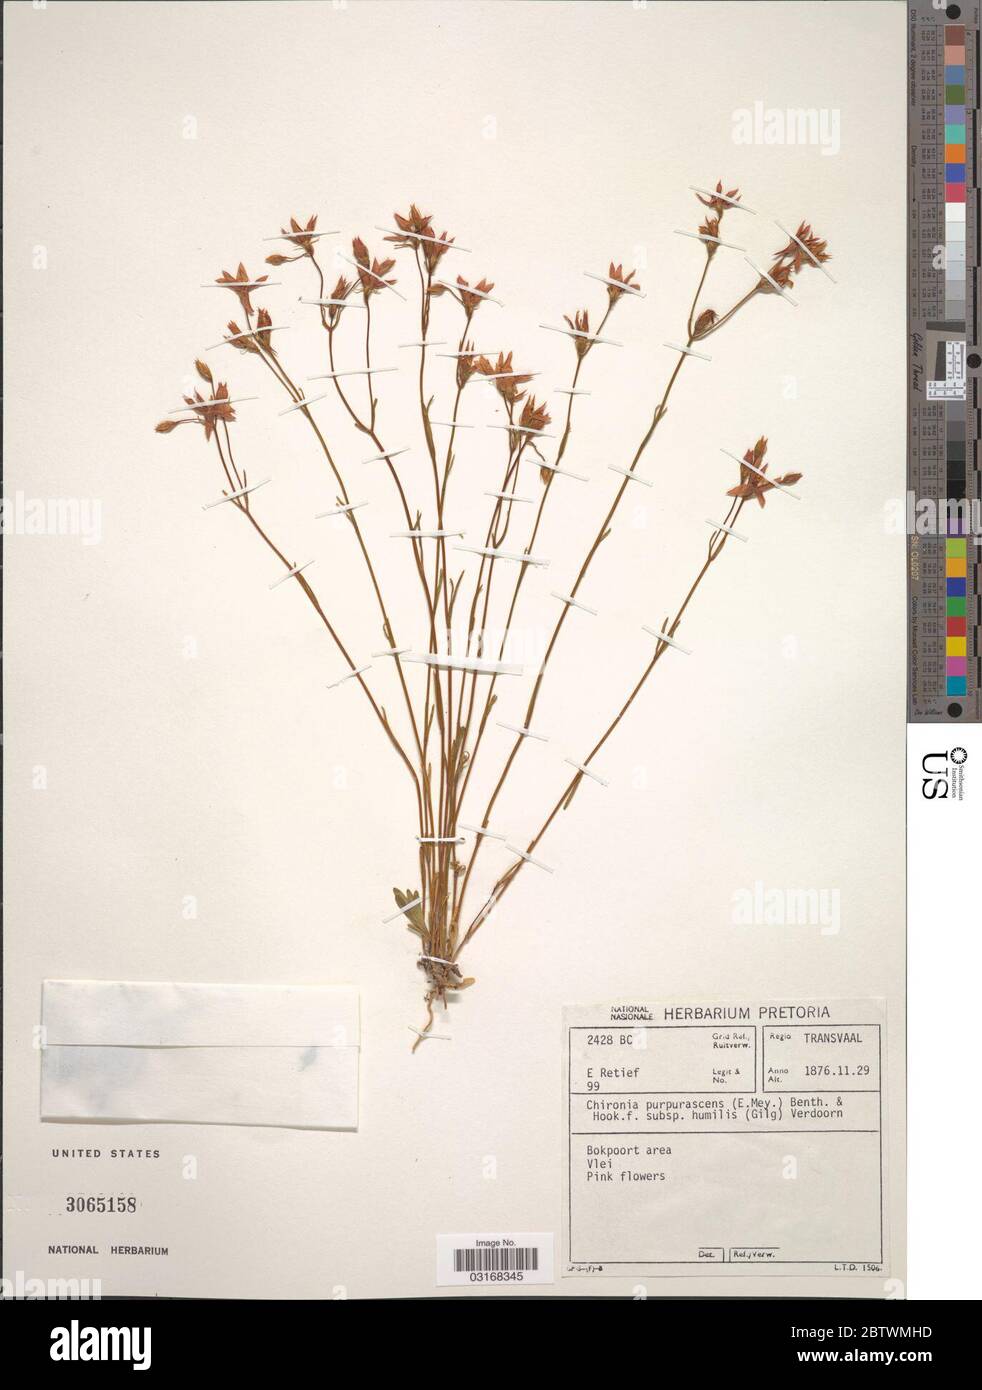 Chironia purpurascens Benth Hook f. Stock Photo